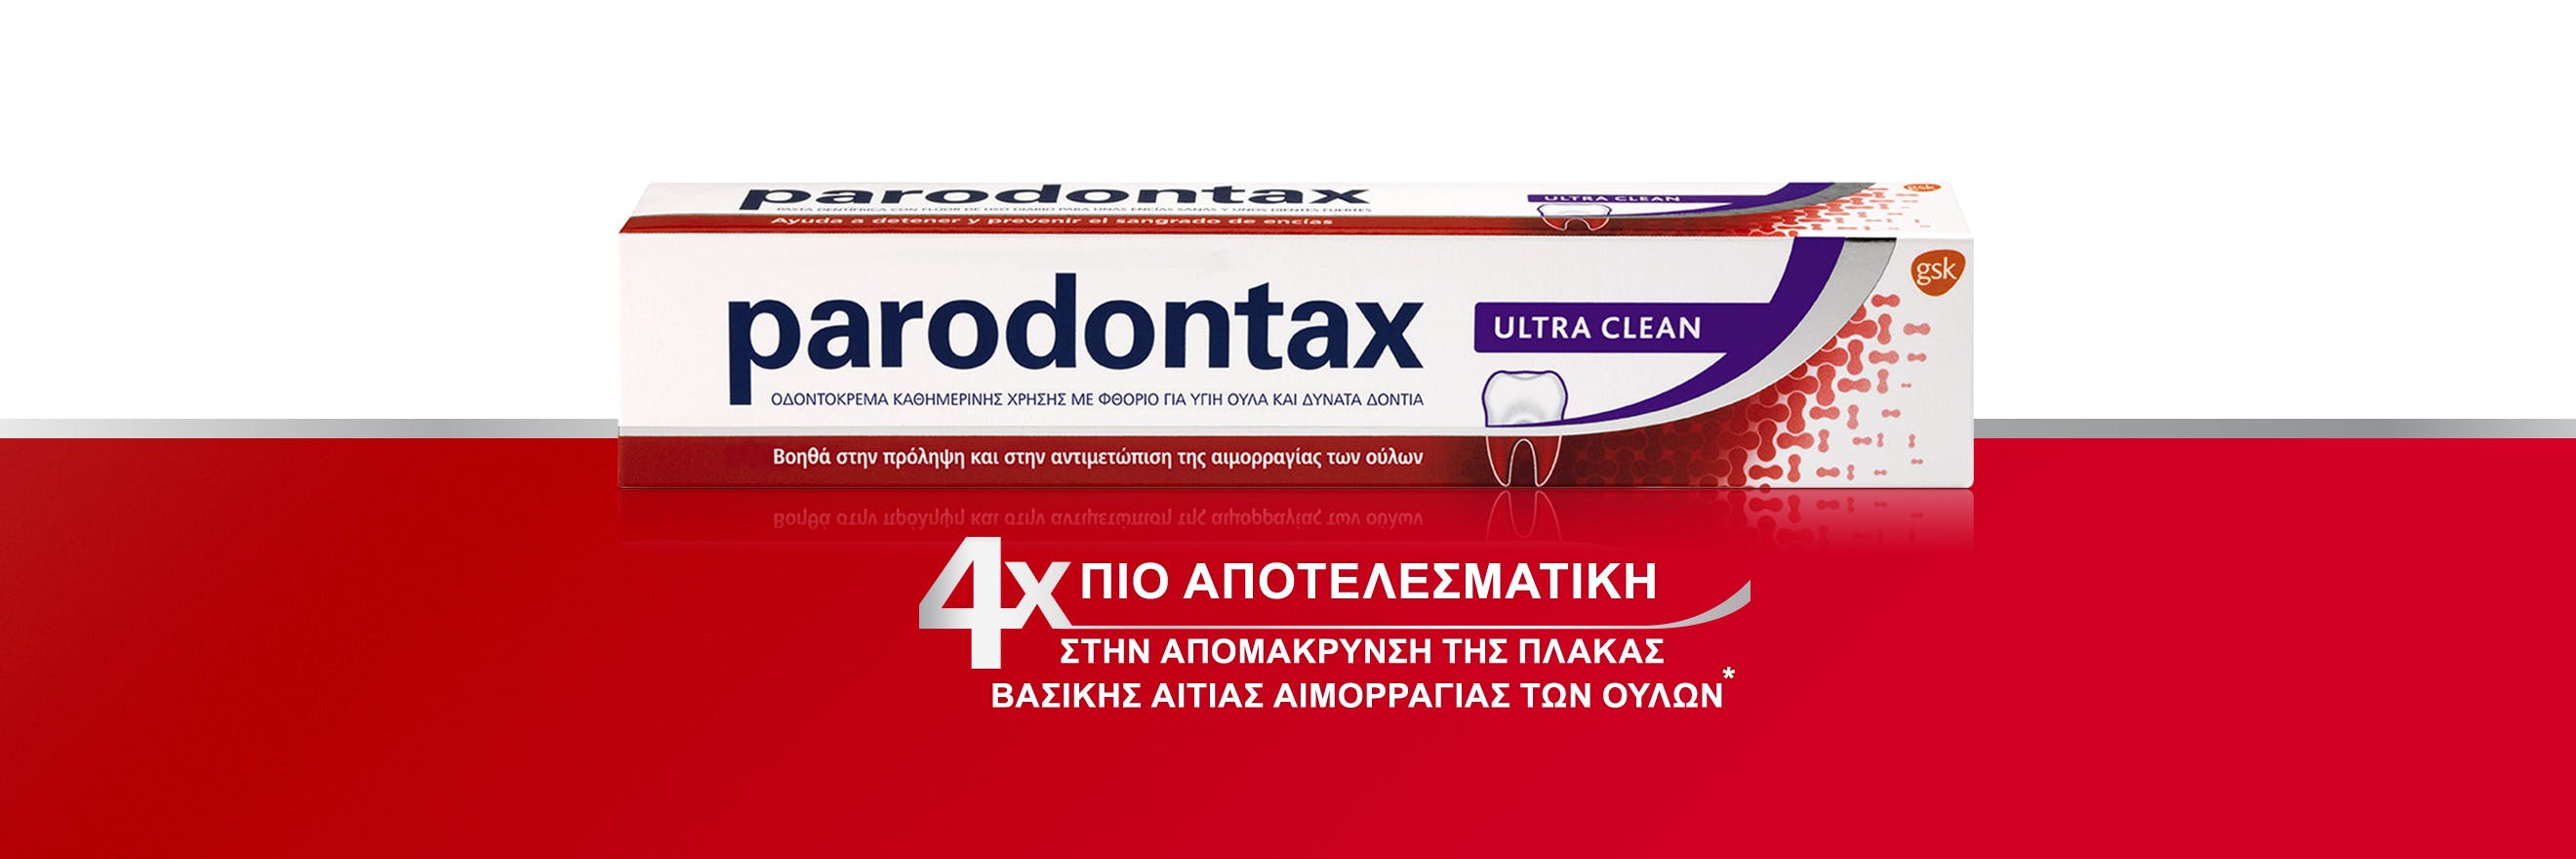 Νέα ιδοντόκρεμα parodontax Daily Ultra Clean για καθημερινή φροντίδα και πρόληψη της αιμορραγίας των ούλων